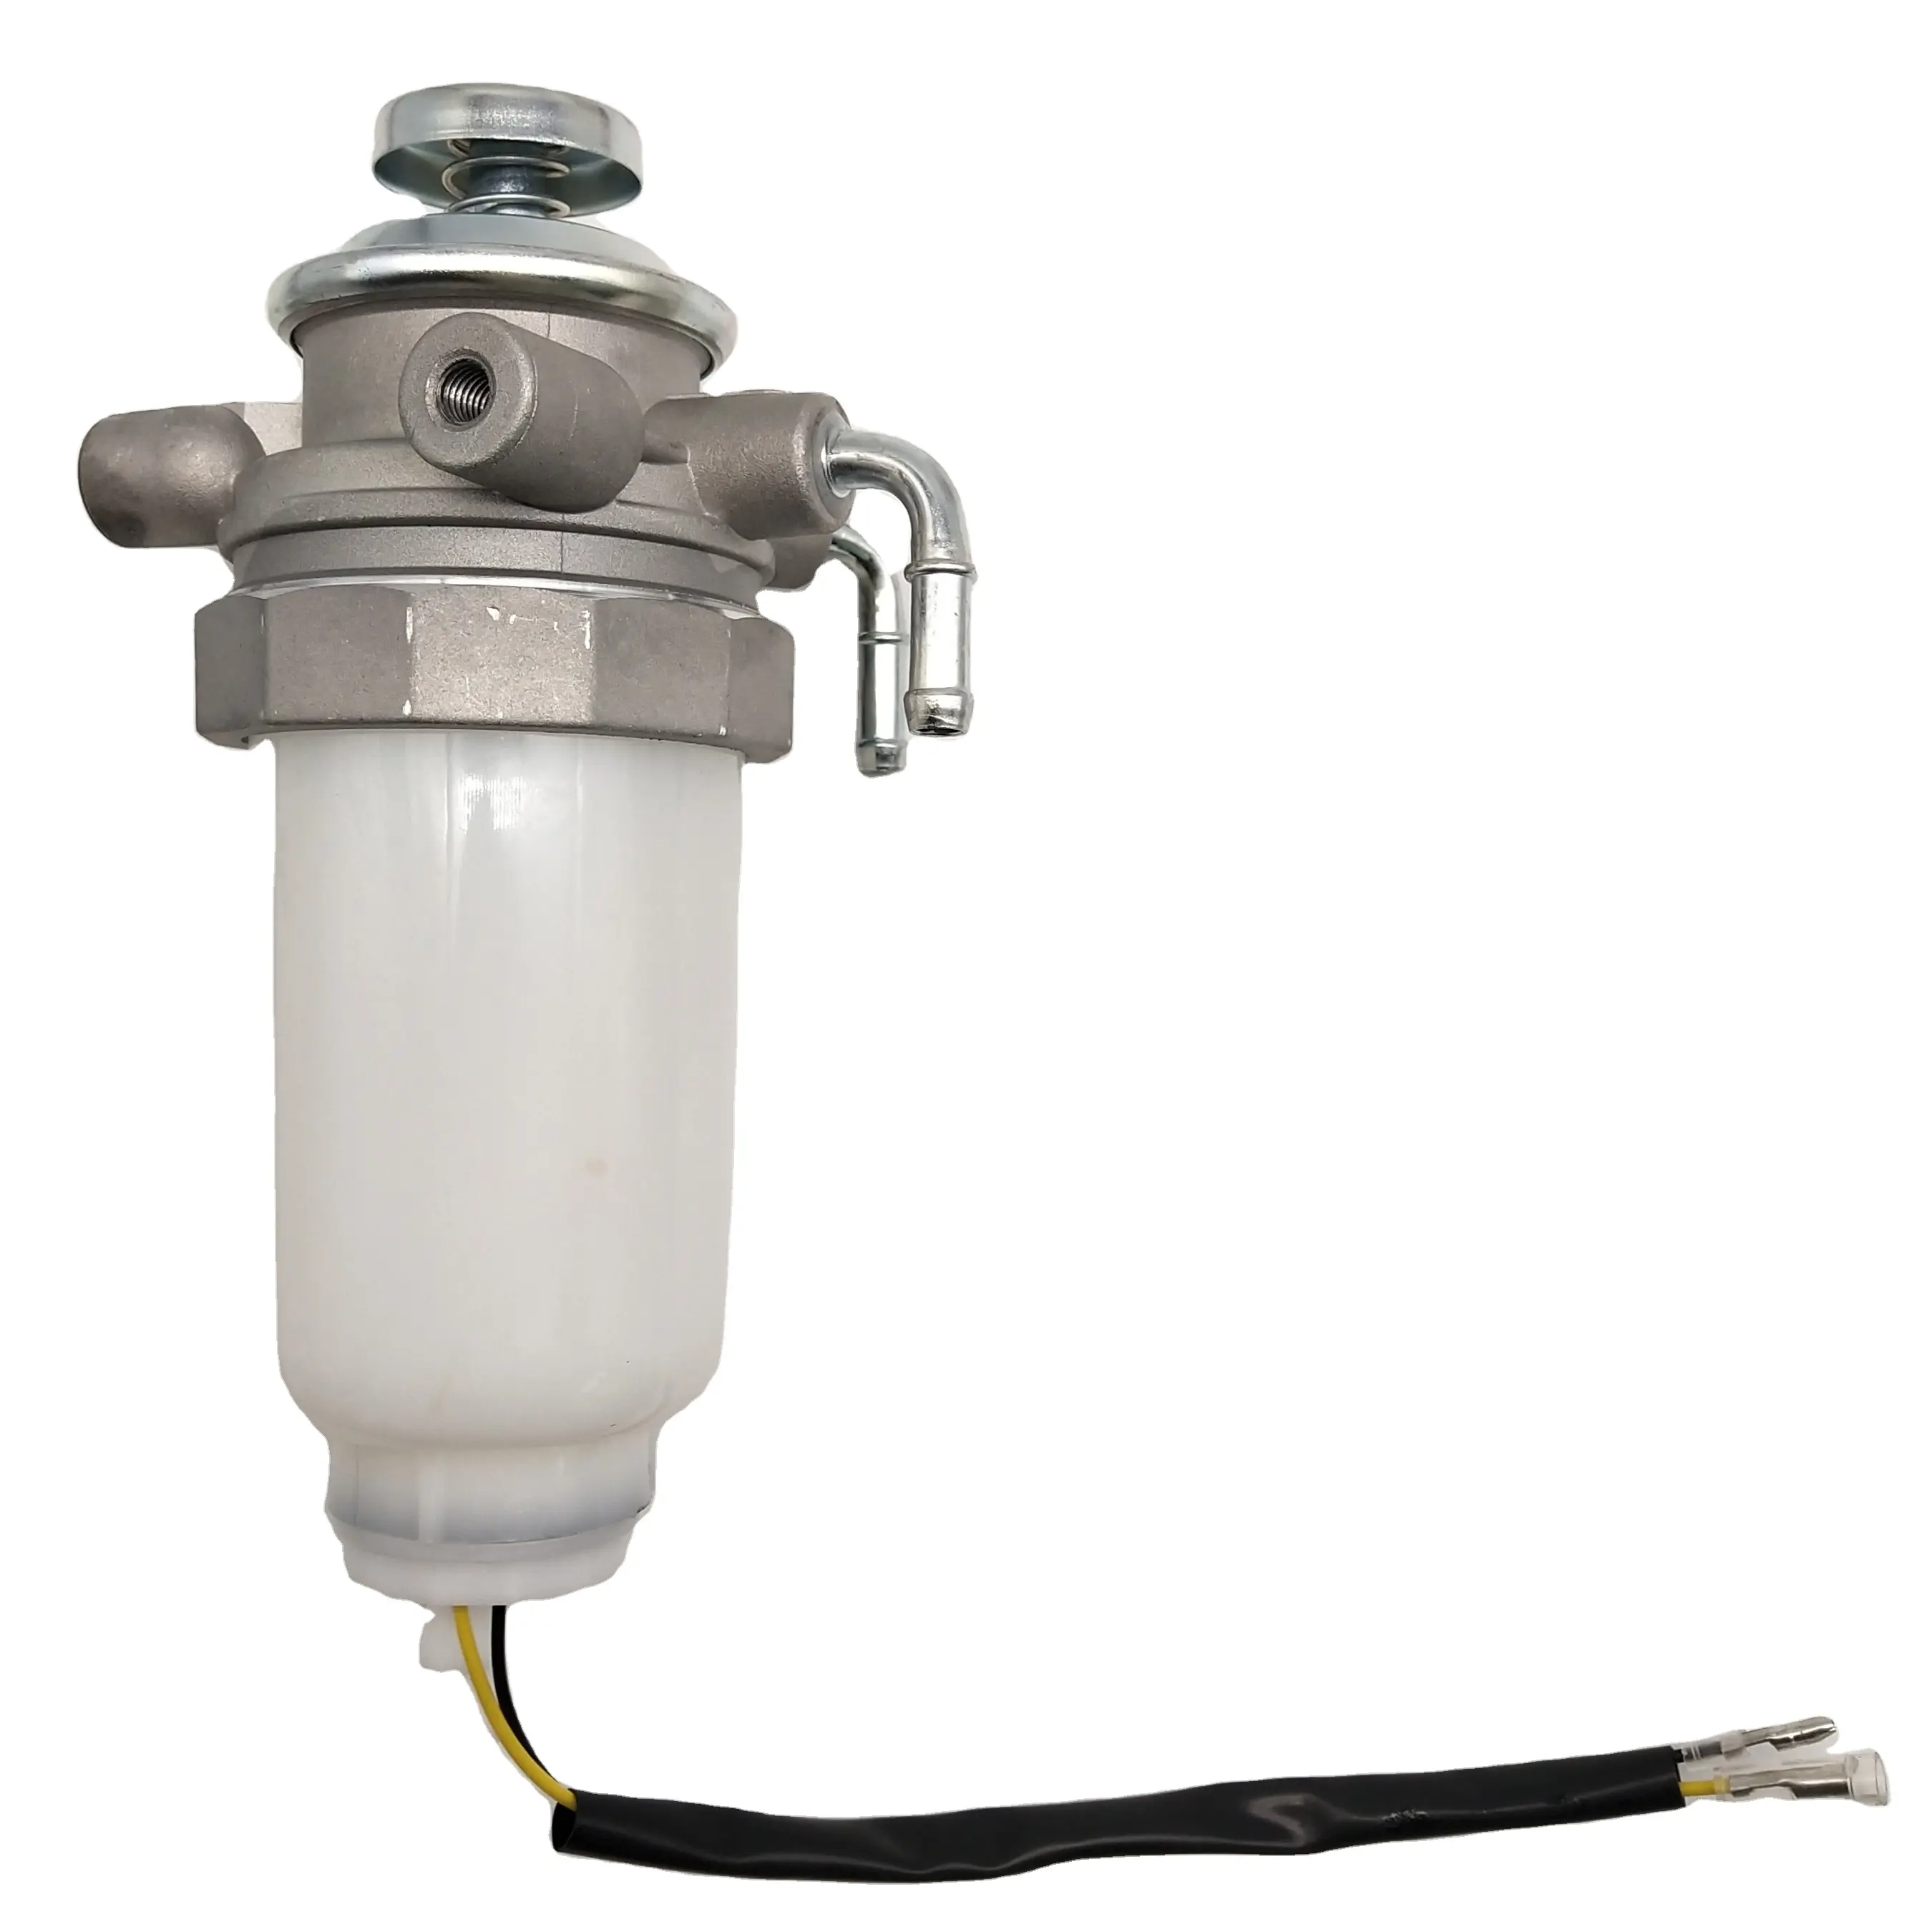 Dizel motor yakıt kaldırma pompası 5-13220-220-0 8-97081-814-0 filtre takma yağ-su ayırıcı benzin ISUZU AR407ZC uyar